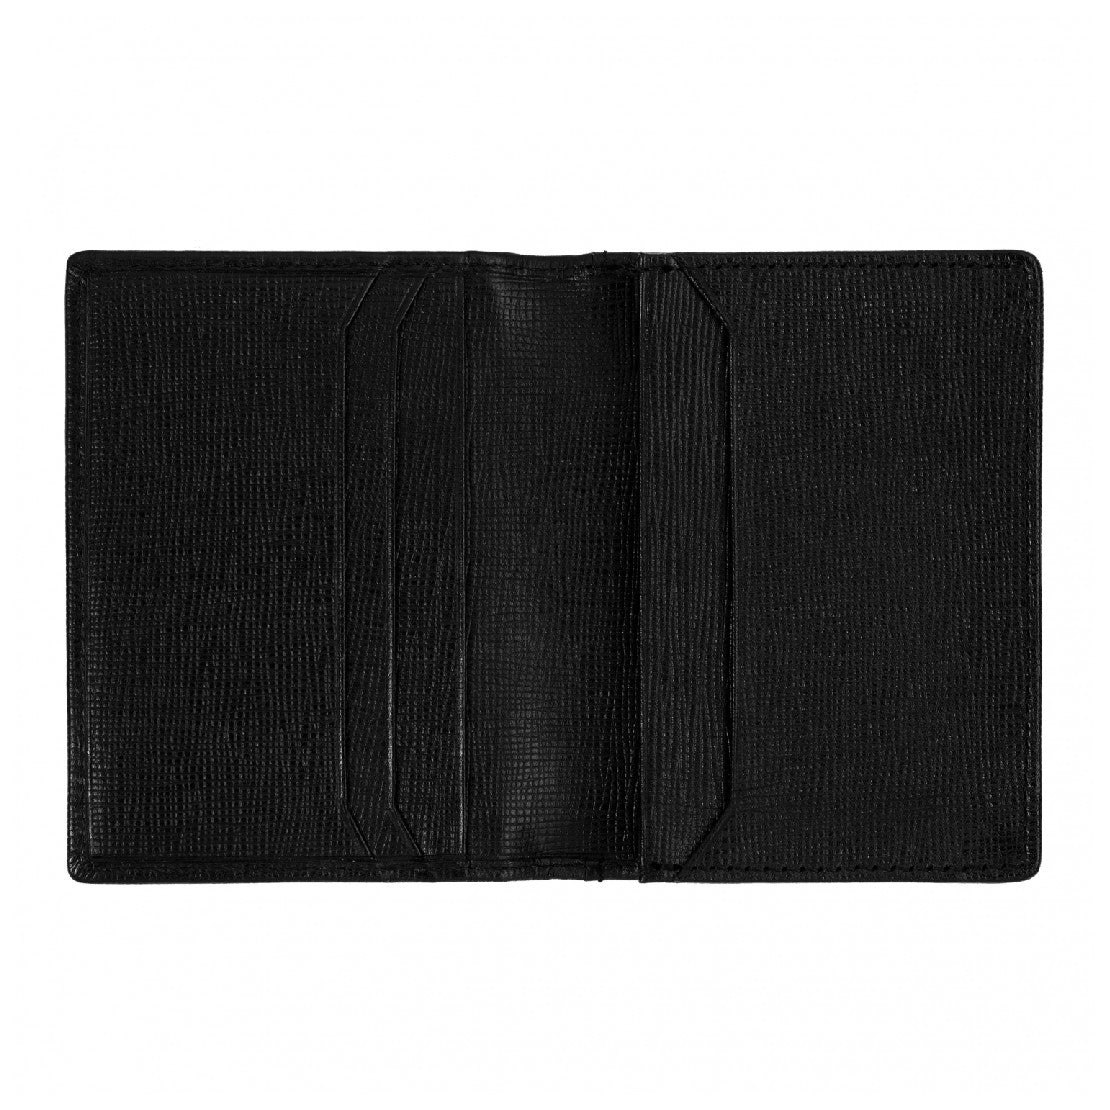 محفظة باللون الأسود من هوغو بوس - HBCH-0004